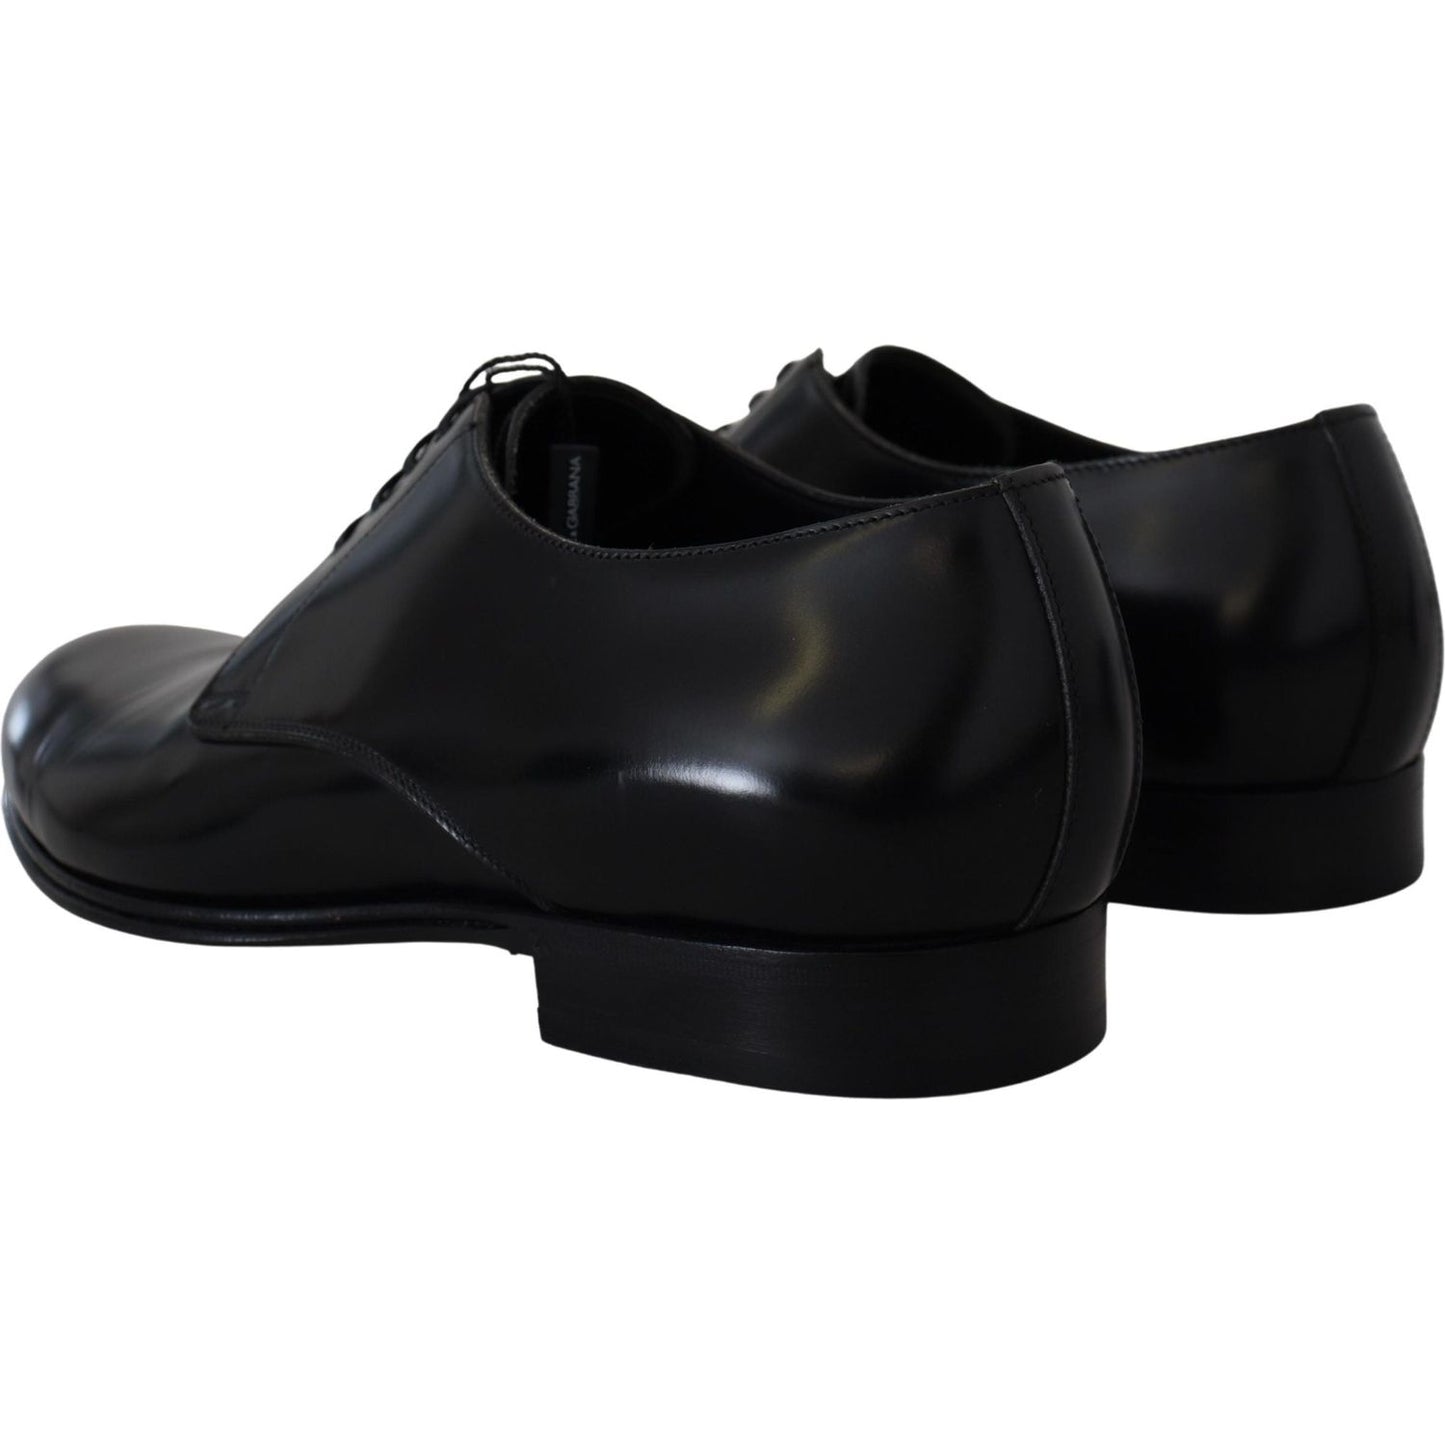 Dolce & Gabbana | Elegant Black Leather Derby Shoes| McRichard Designer Brands   